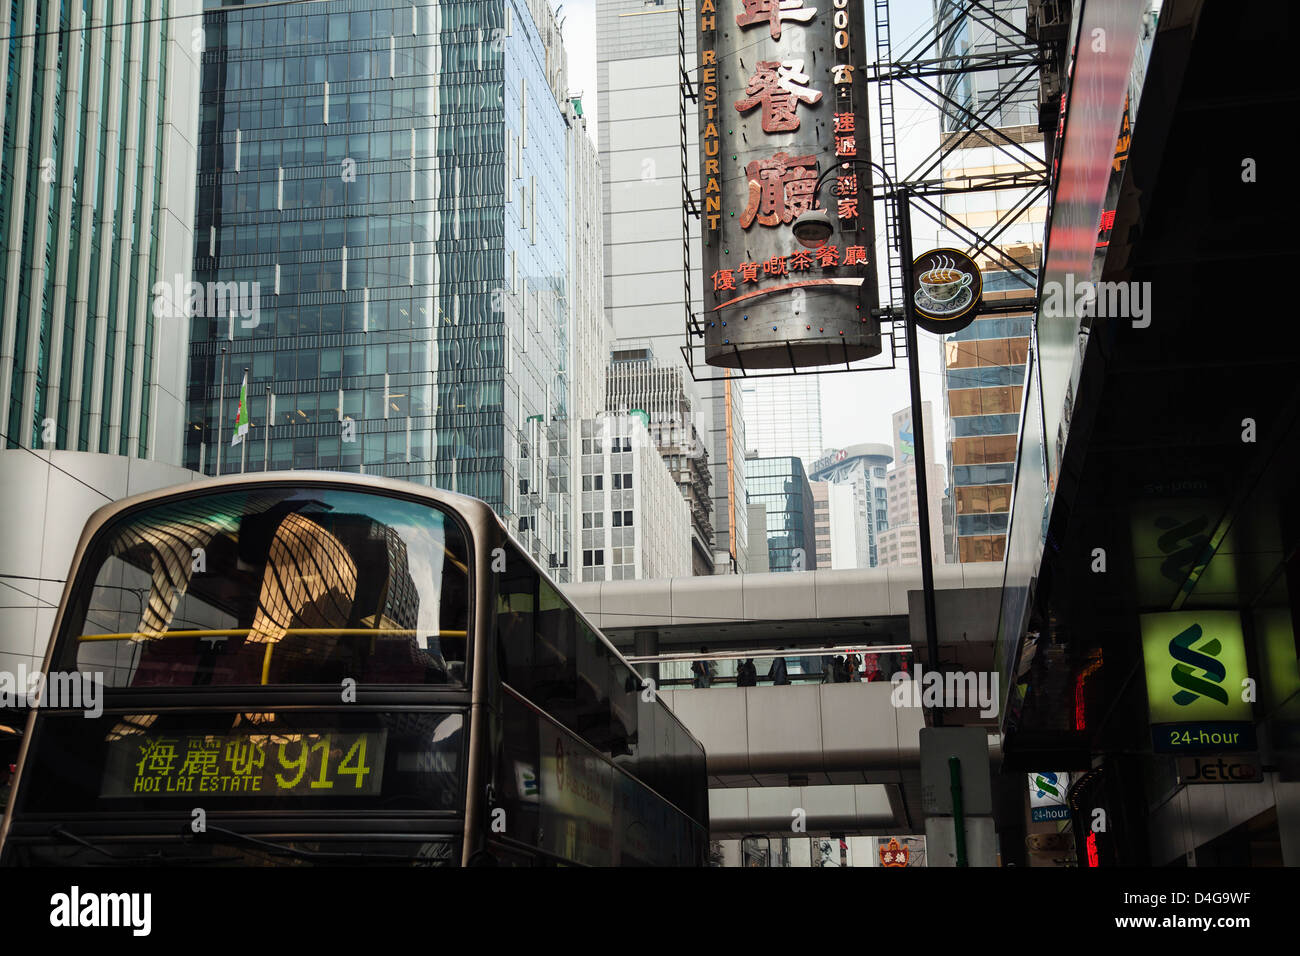 Un autobus di città, edifici moderni e un ristorante sign in Hong Kong. Foto Stock